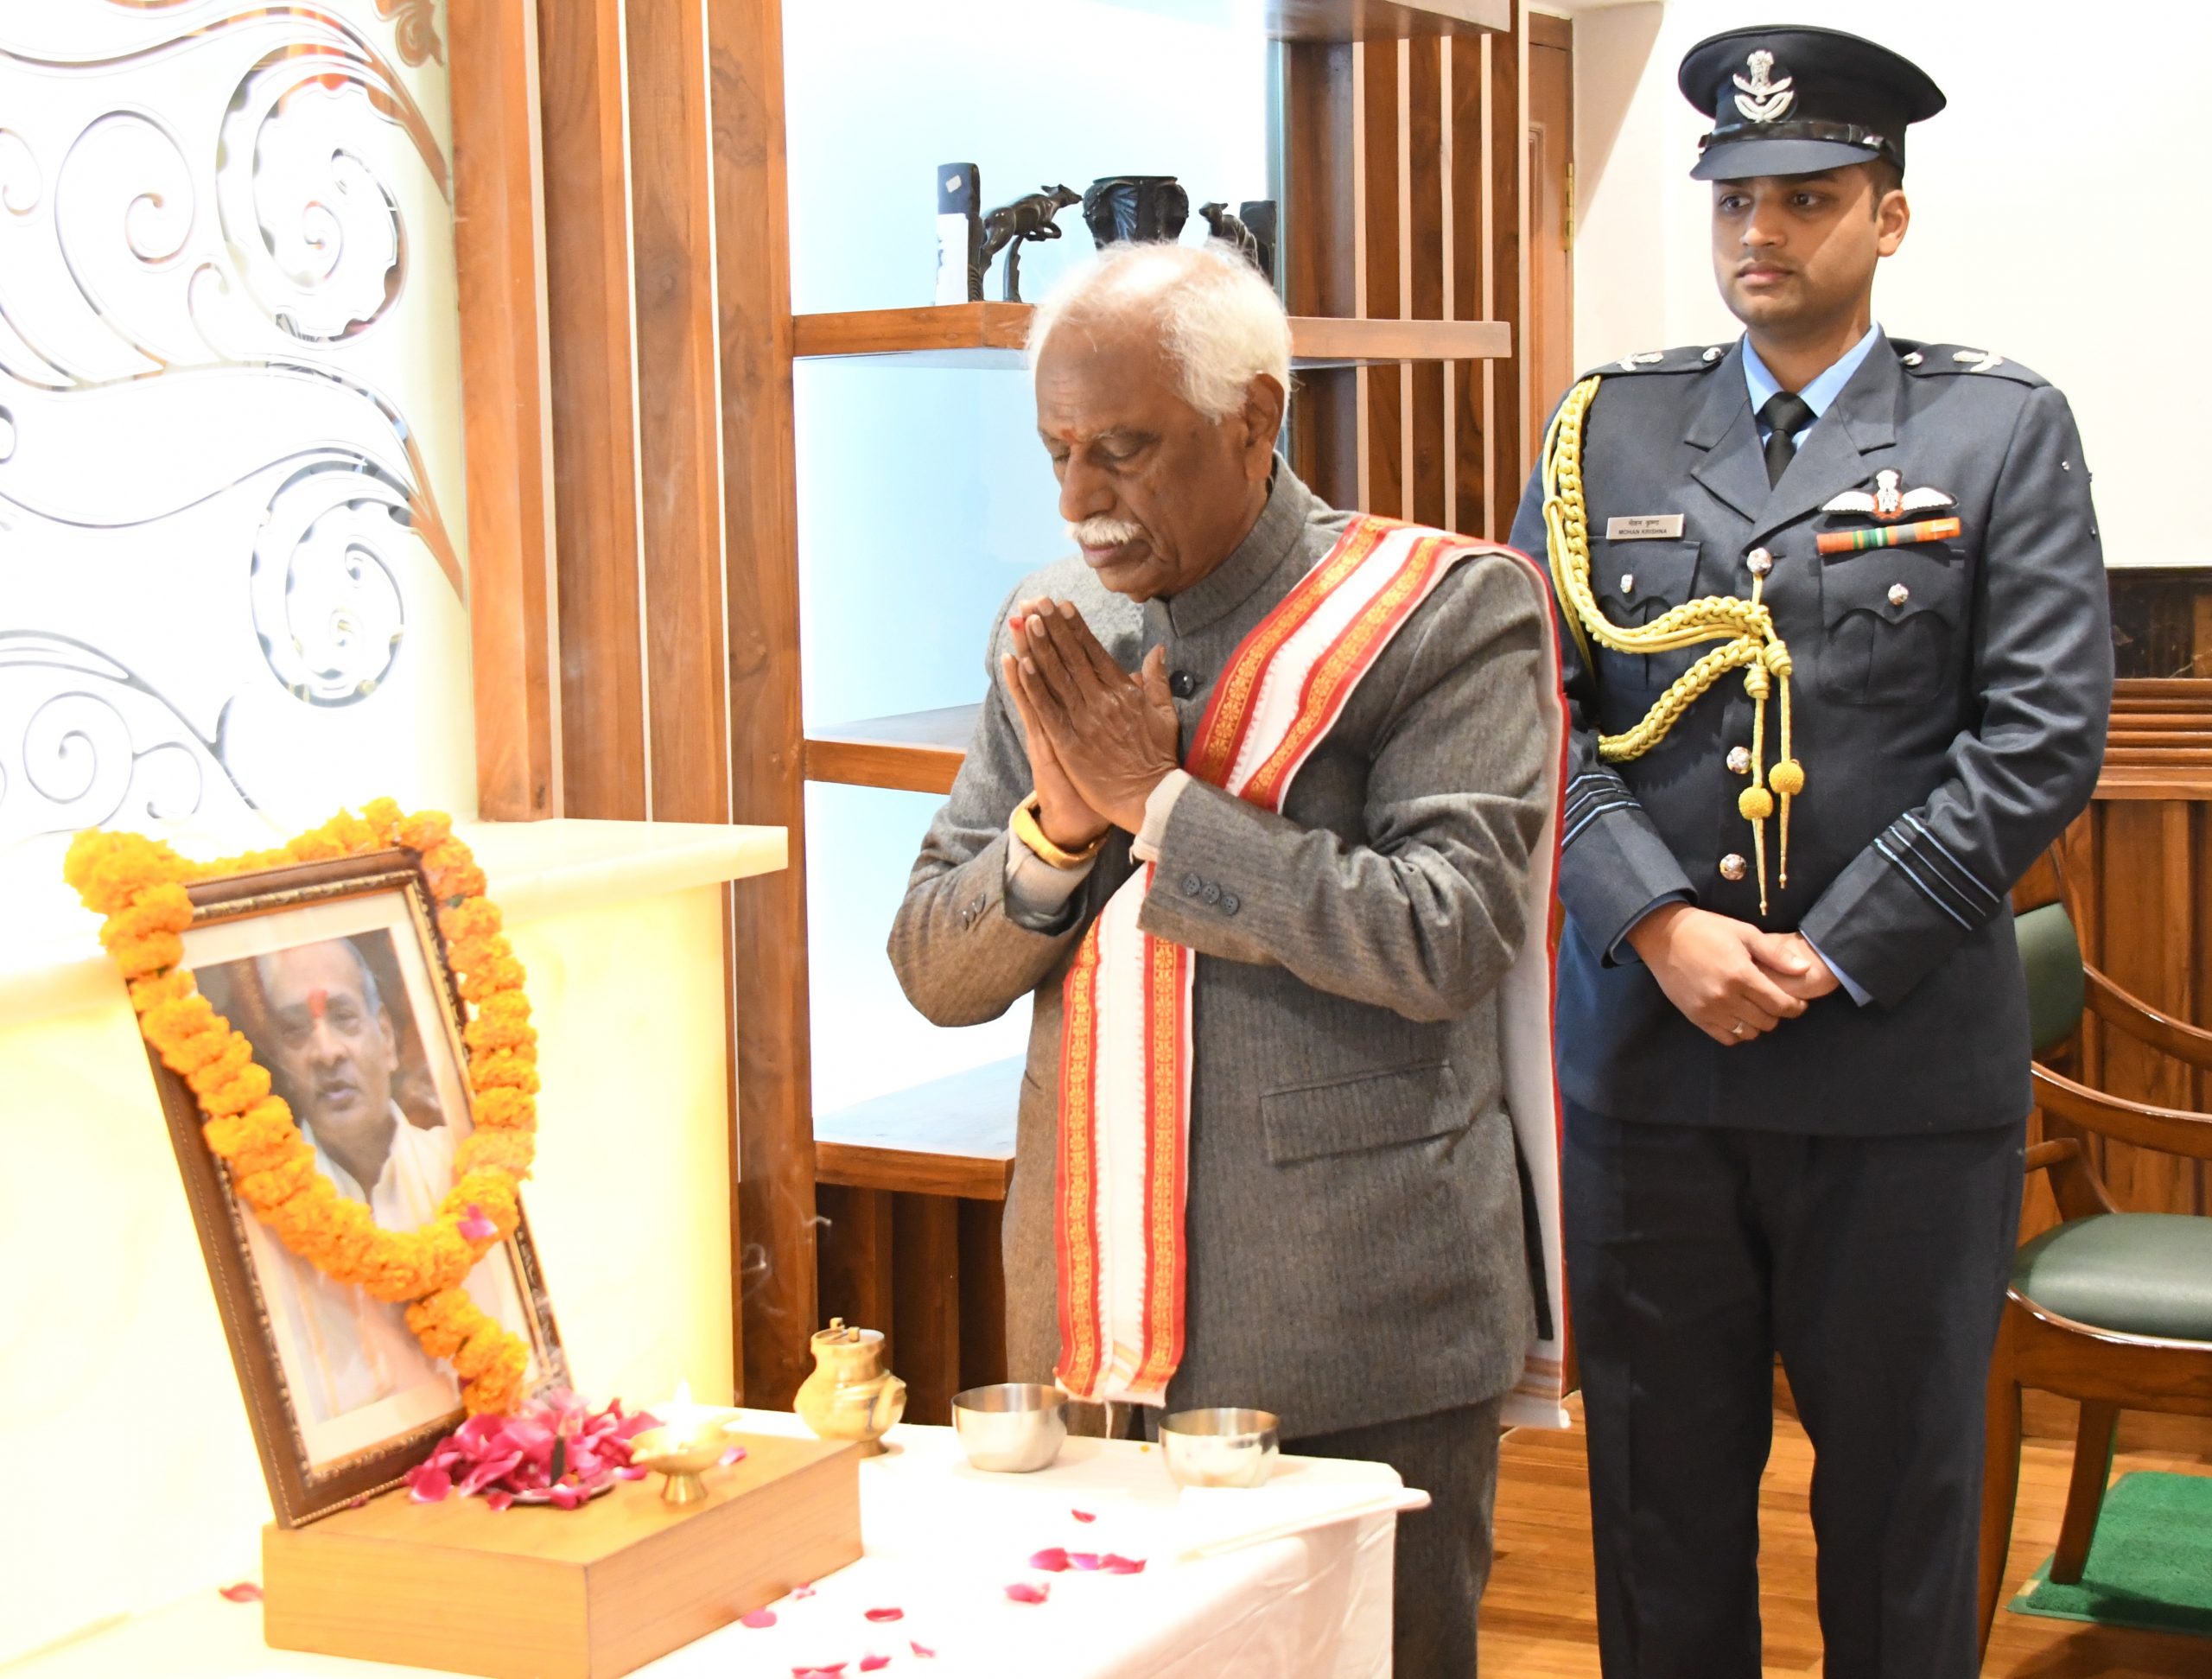 राज्यपाल श्री बंडारू दत्तात्रेय शक्रवार को राजभवन में पूर्व प्रधानमंत्री स्वर्गीय श्री पी.वी. नरसिम्हा राव की पुण्यतिथि पर उन्हें विनम्र श्रद्धांजलि अर्पित कर नमन करते हुए